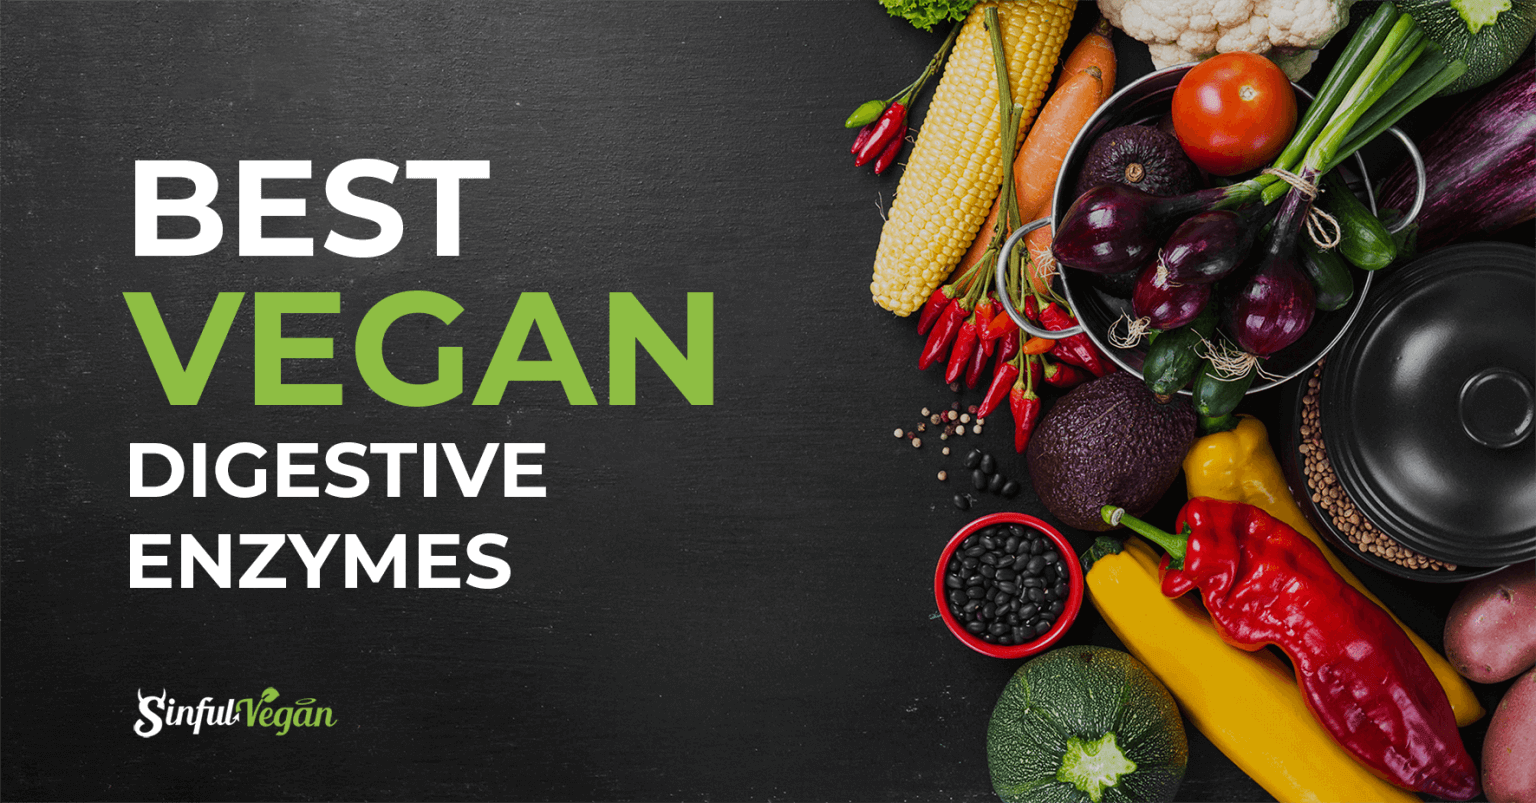 Best Vegan Digestive Enzymes - Sinful Vegan